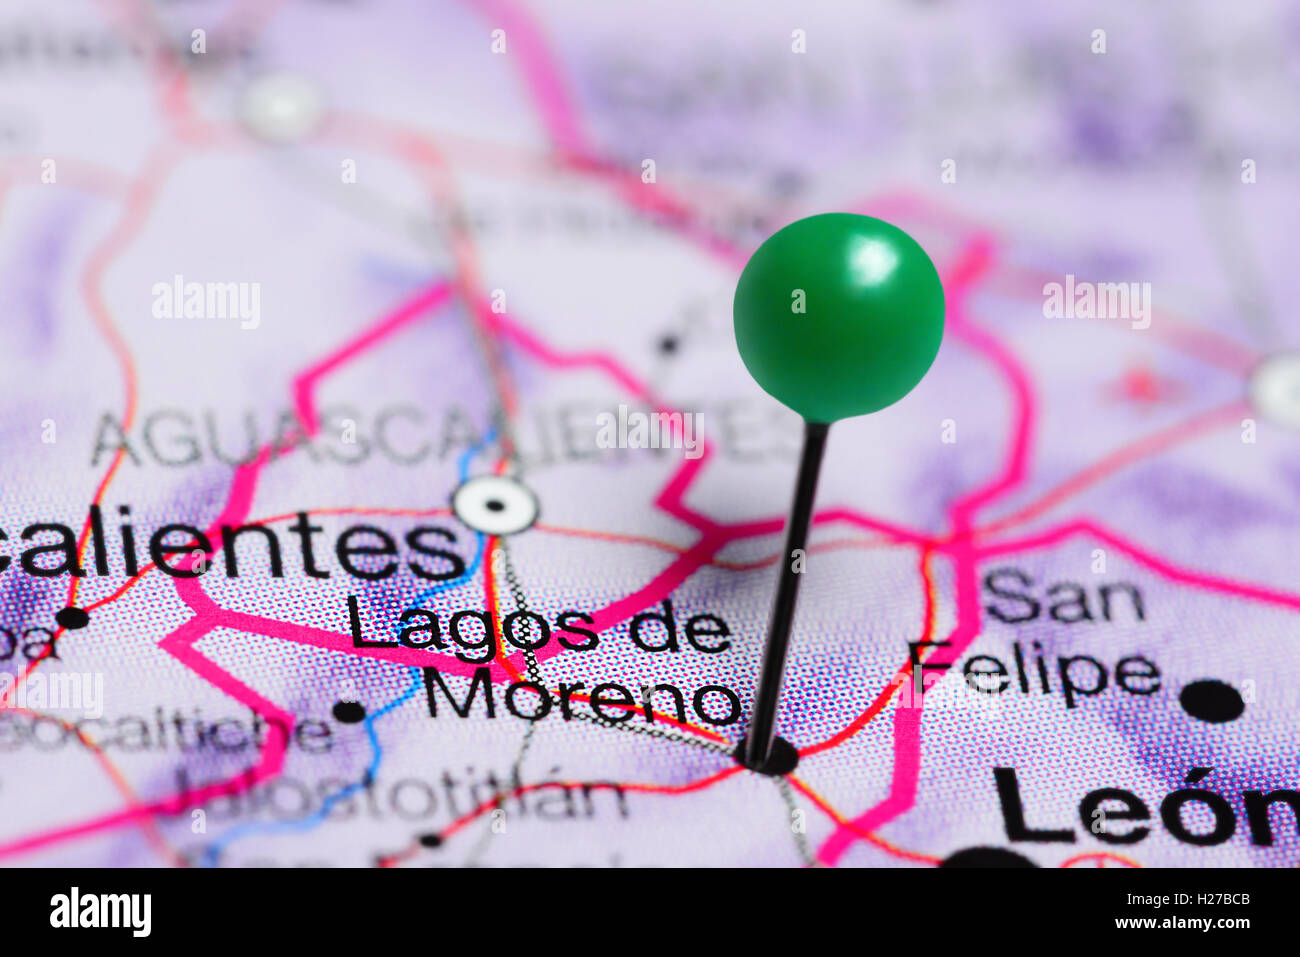 Lagos de Moreno imperniata su una mappa del Messico Foto Stock